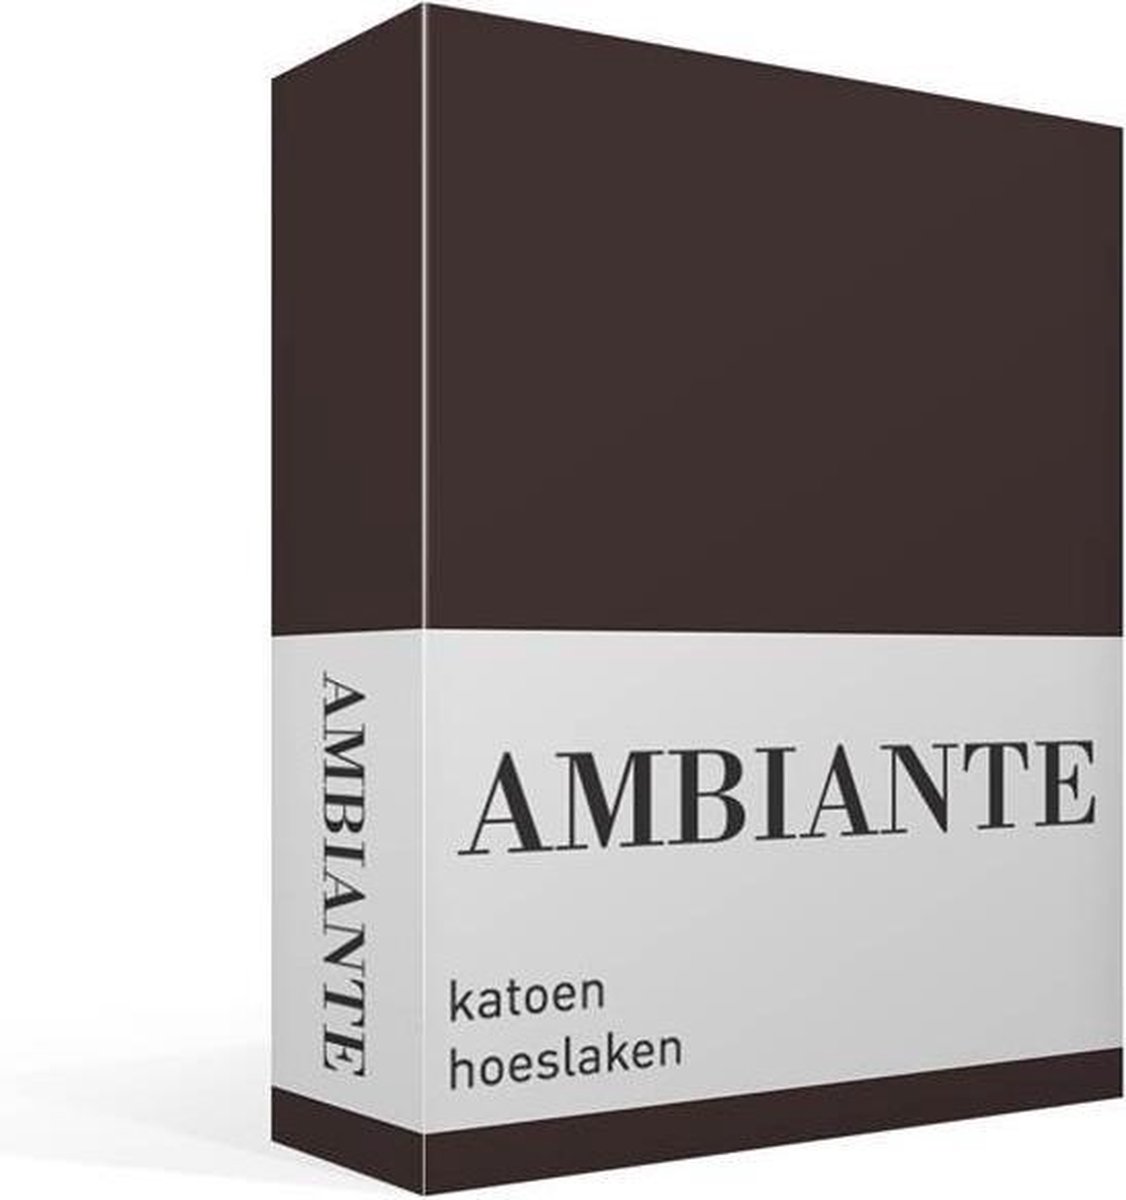 AMBIANTE Hoeslaken Katoen Brown-lits-jumeaux (180x200 Cm) - Bruin